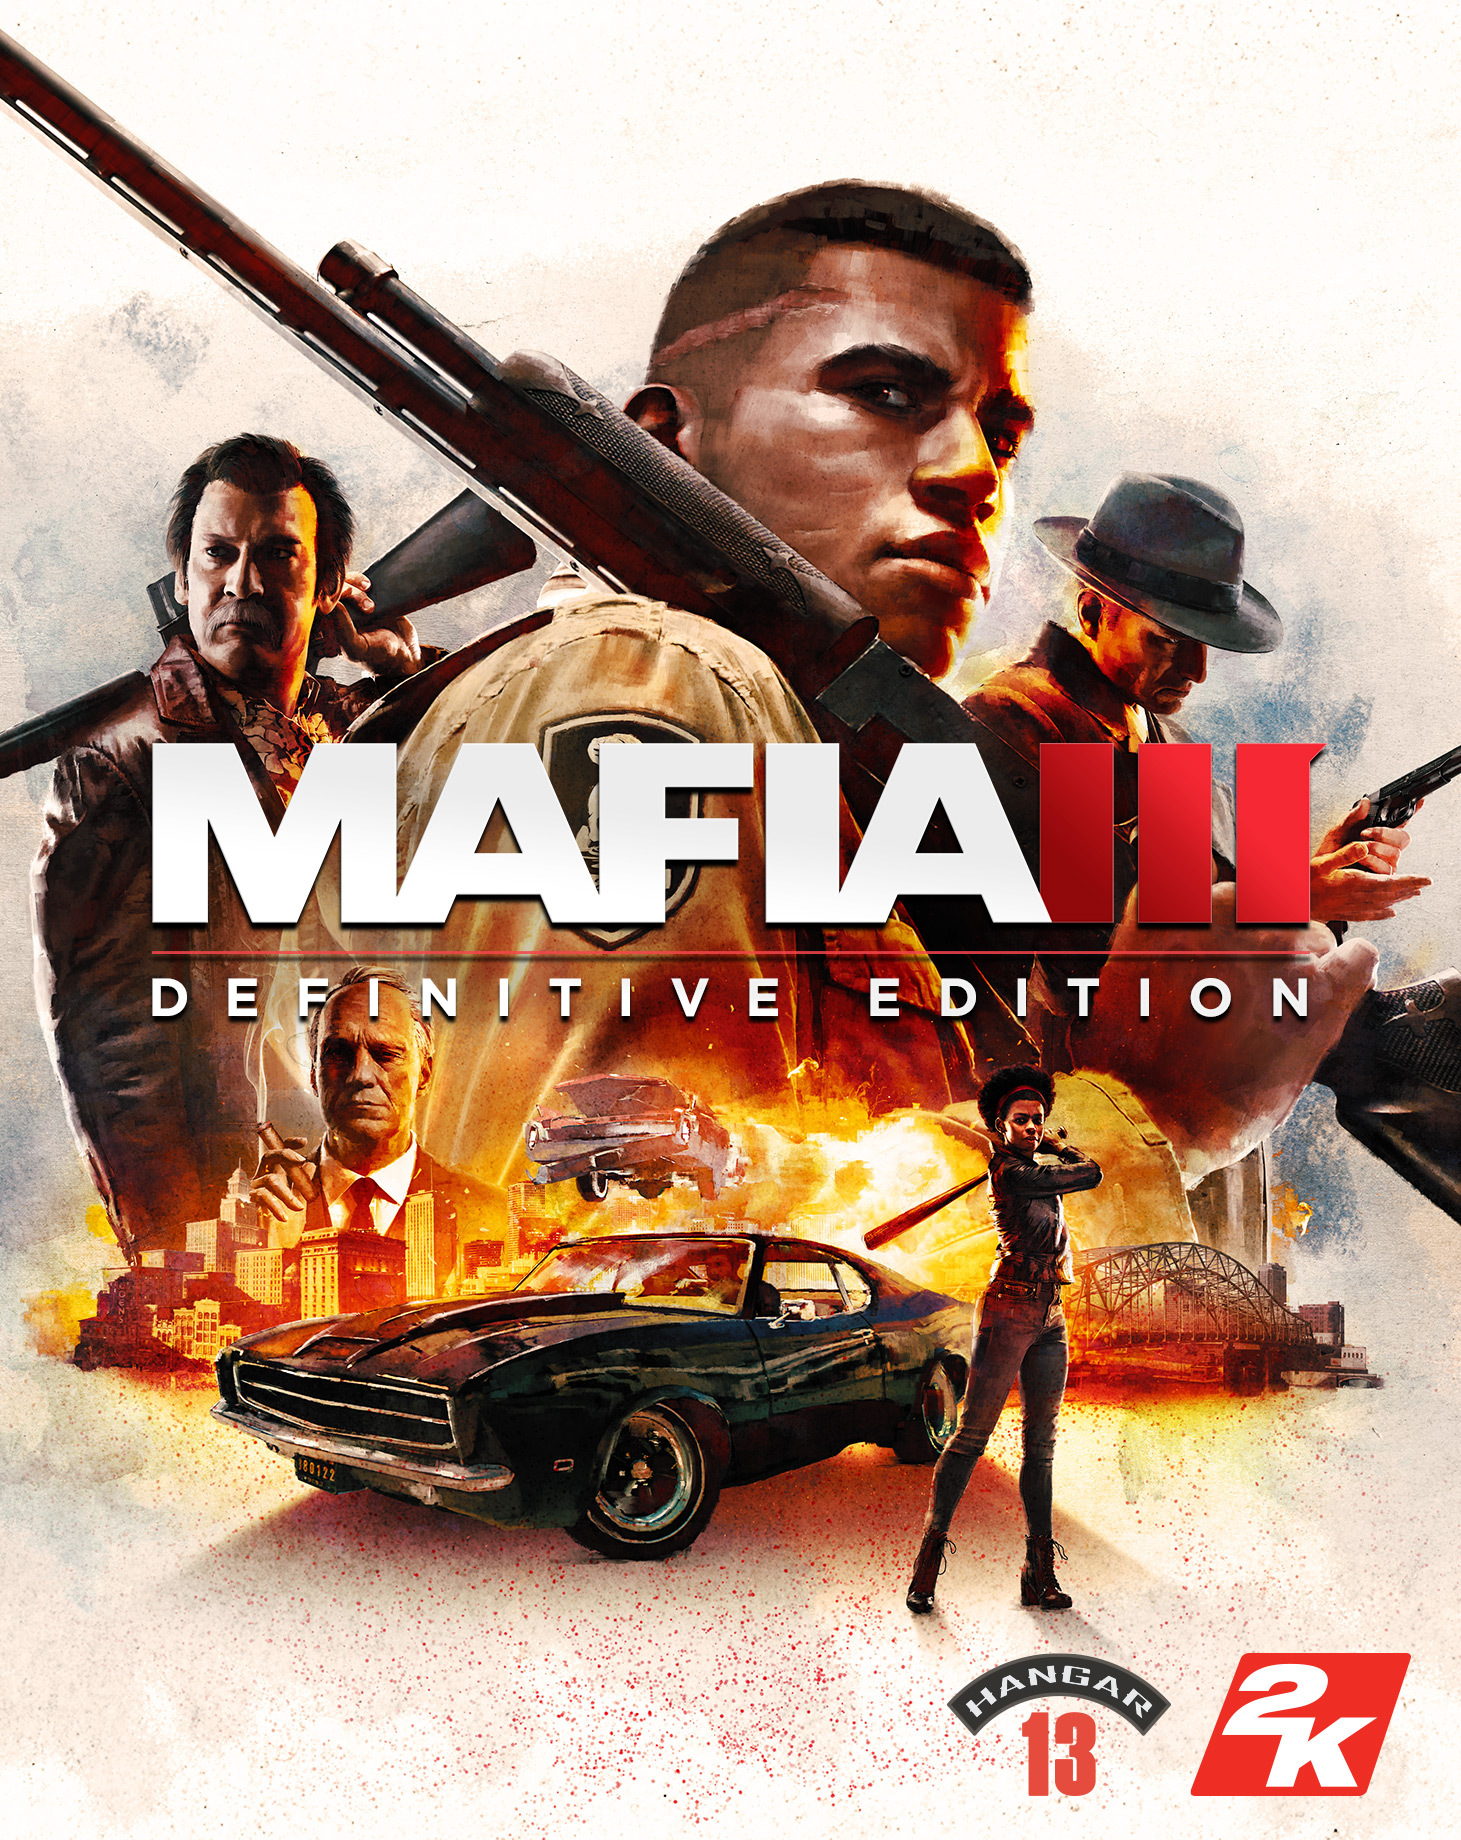 mafia trilogy xbox one digital download